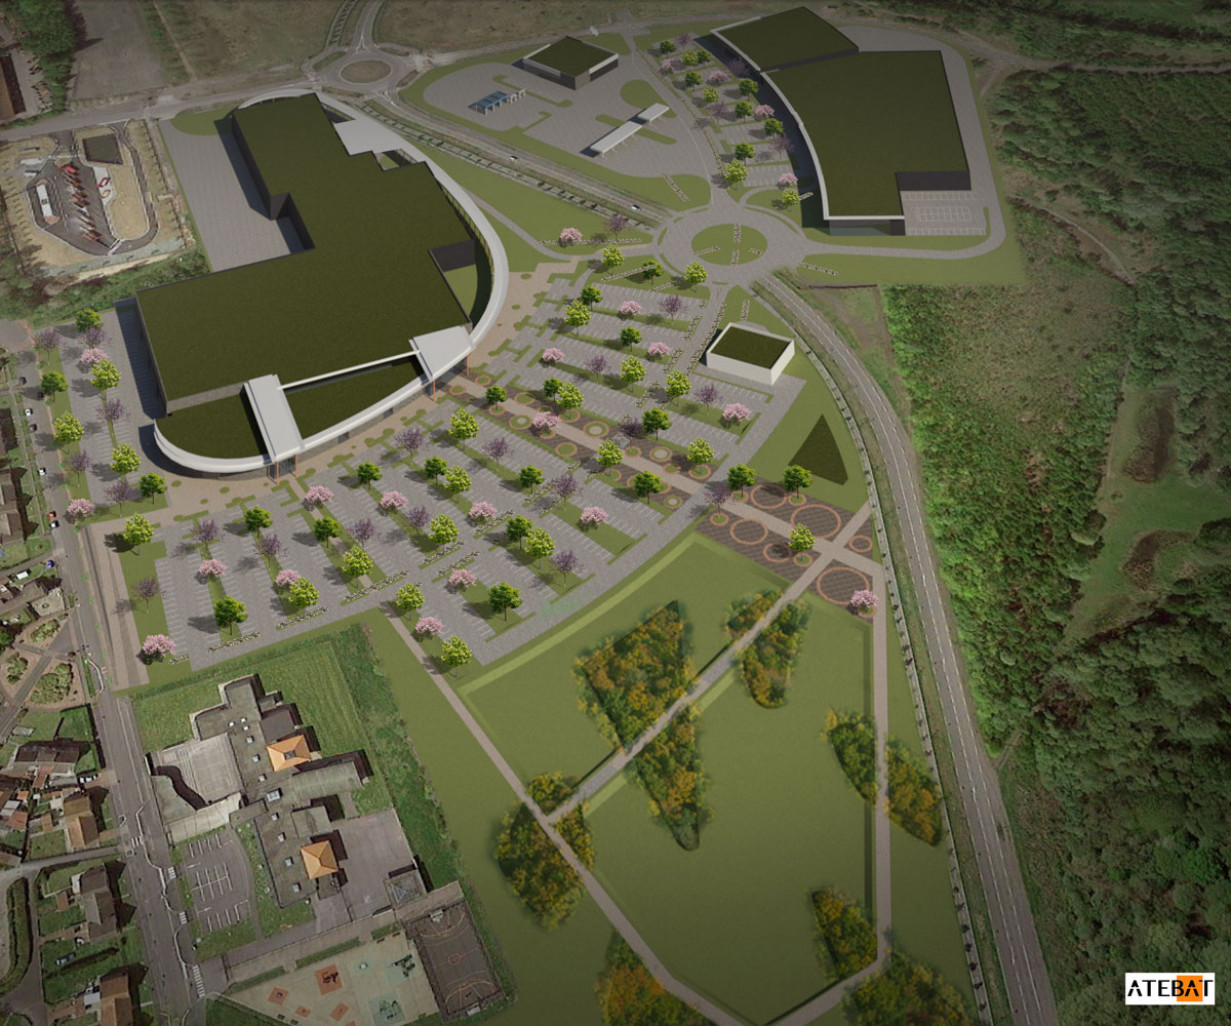 L'image virtuelle montre un bâtiment parfaitement intégré à la zone, mettant l'accent sur les espaces verts.